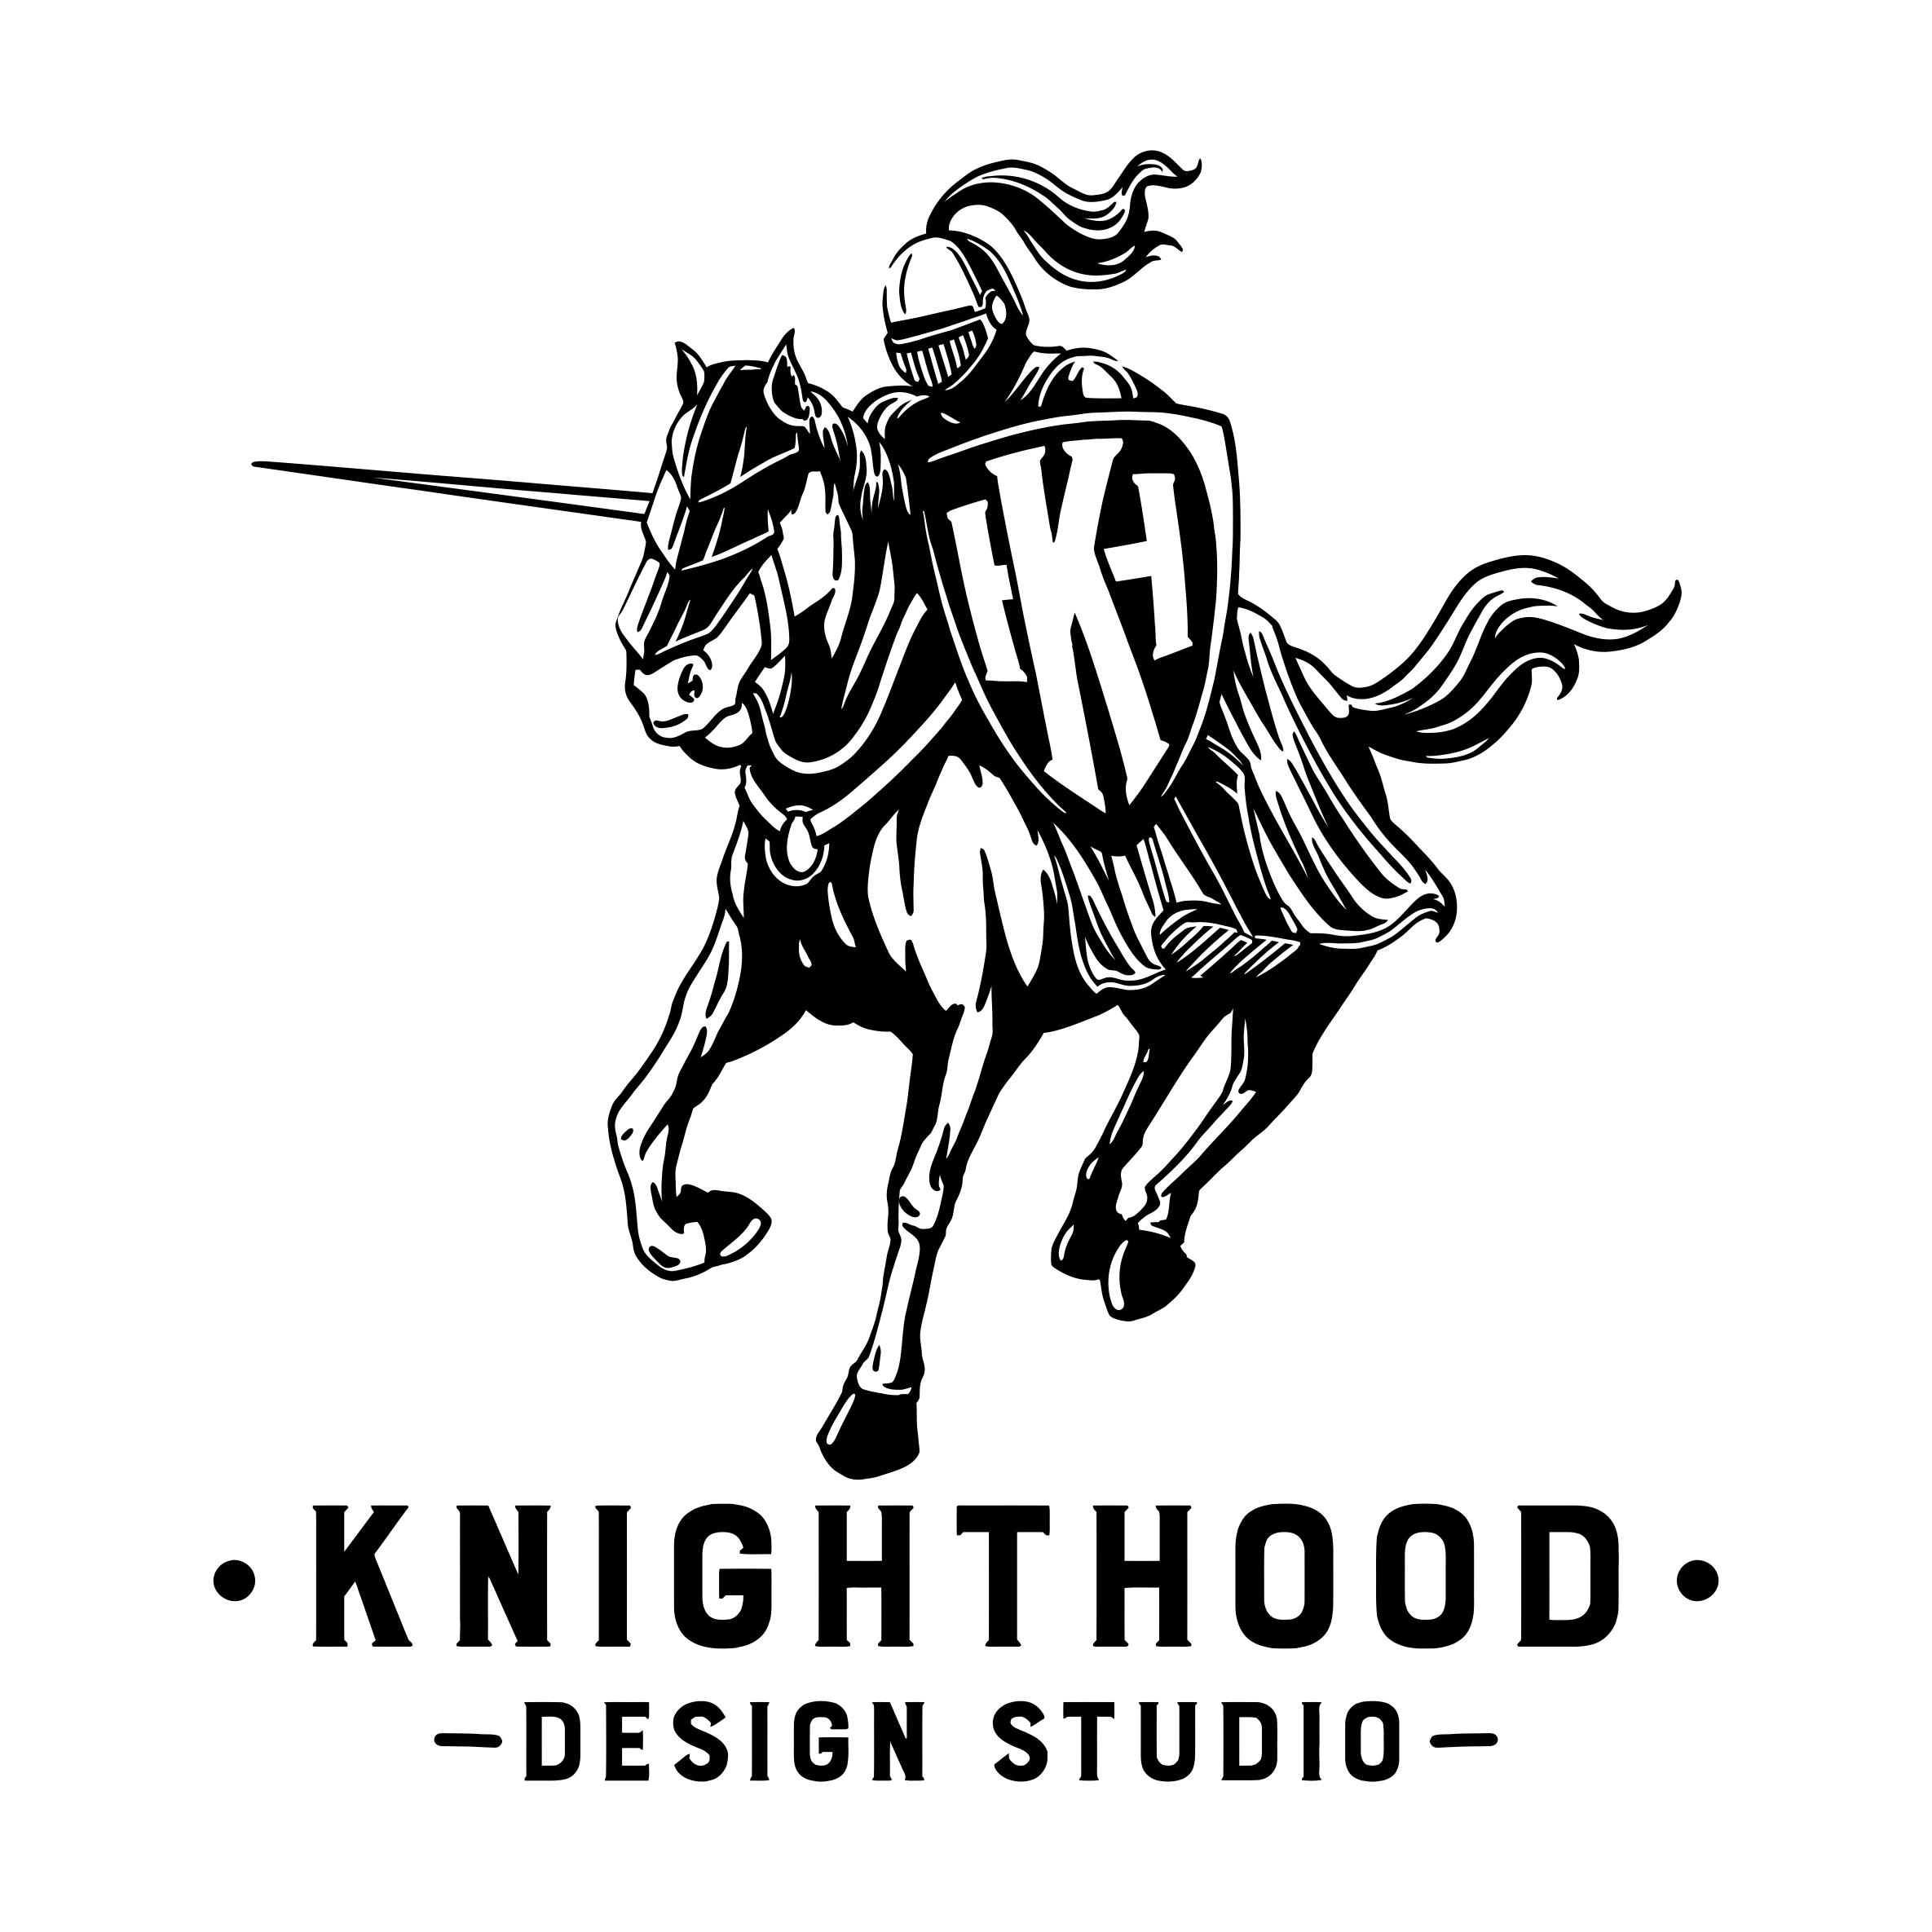 Knighthood Digital Marketing